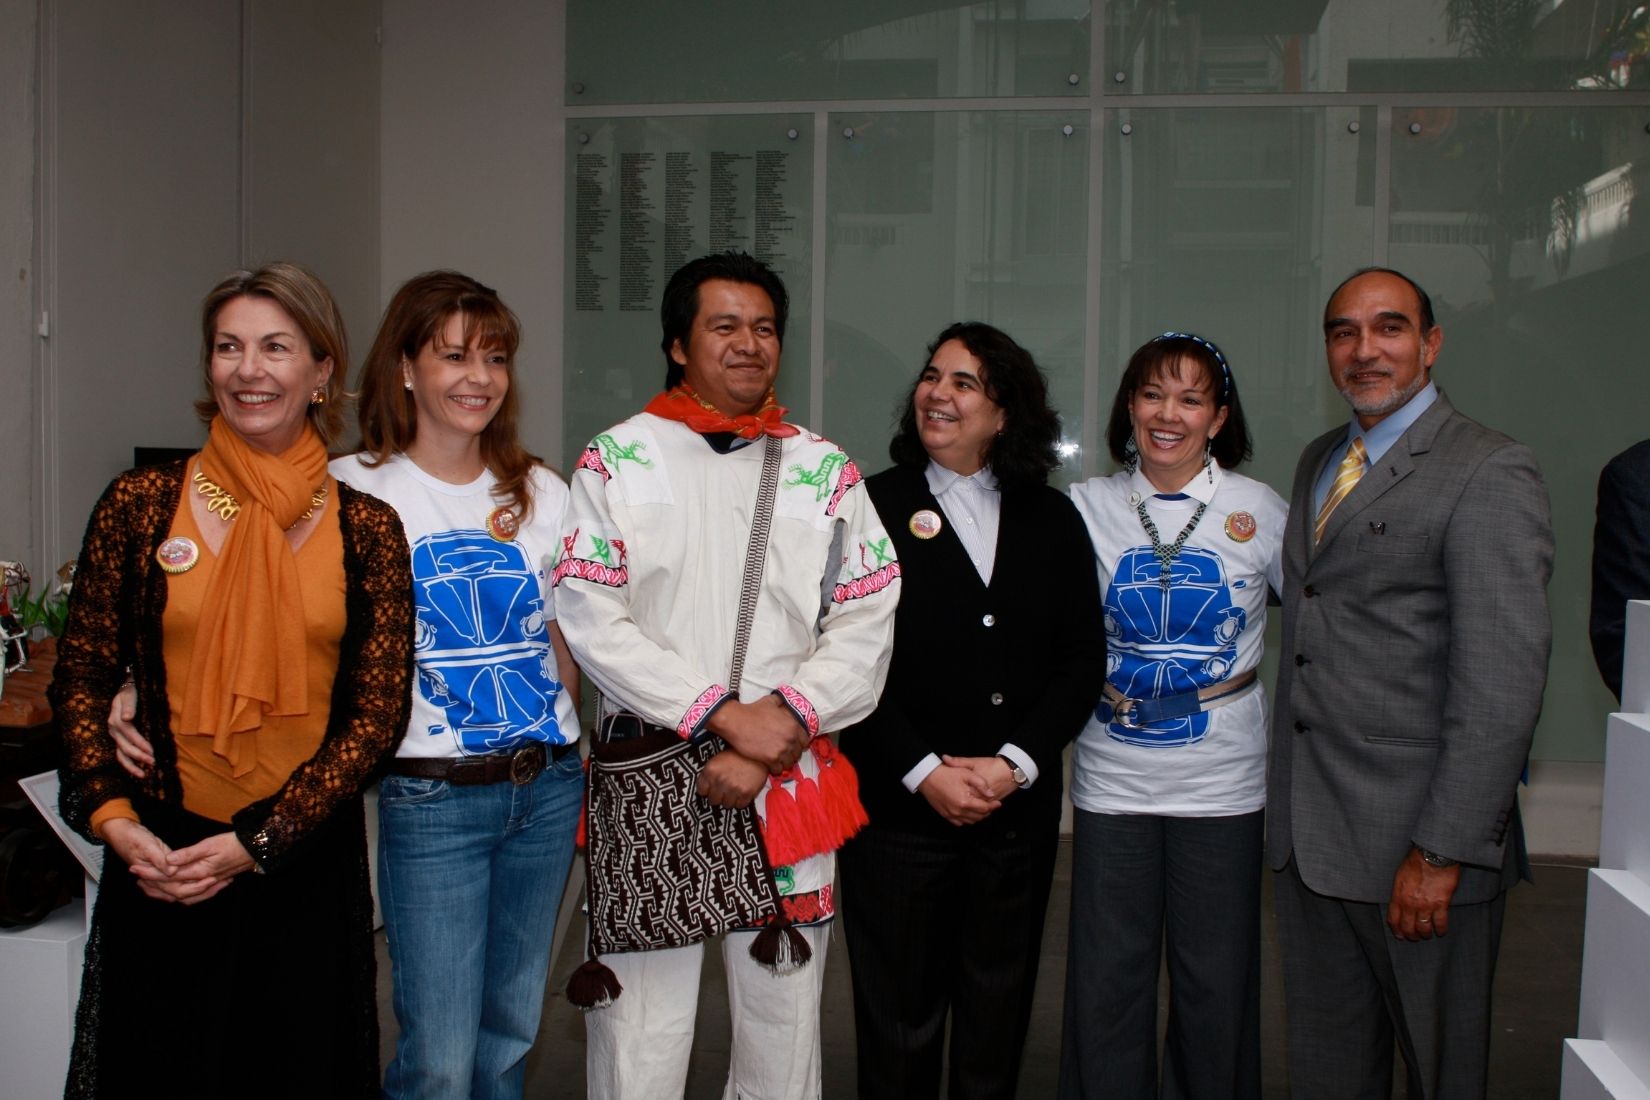 Maire Thérèse Hermand de Arango, Frnanda Suárez de Guerra, Álvaro Ortiz, Consuelo Saizar, Cecilia Barbará de Moctezuma en la presentación del Vochol.